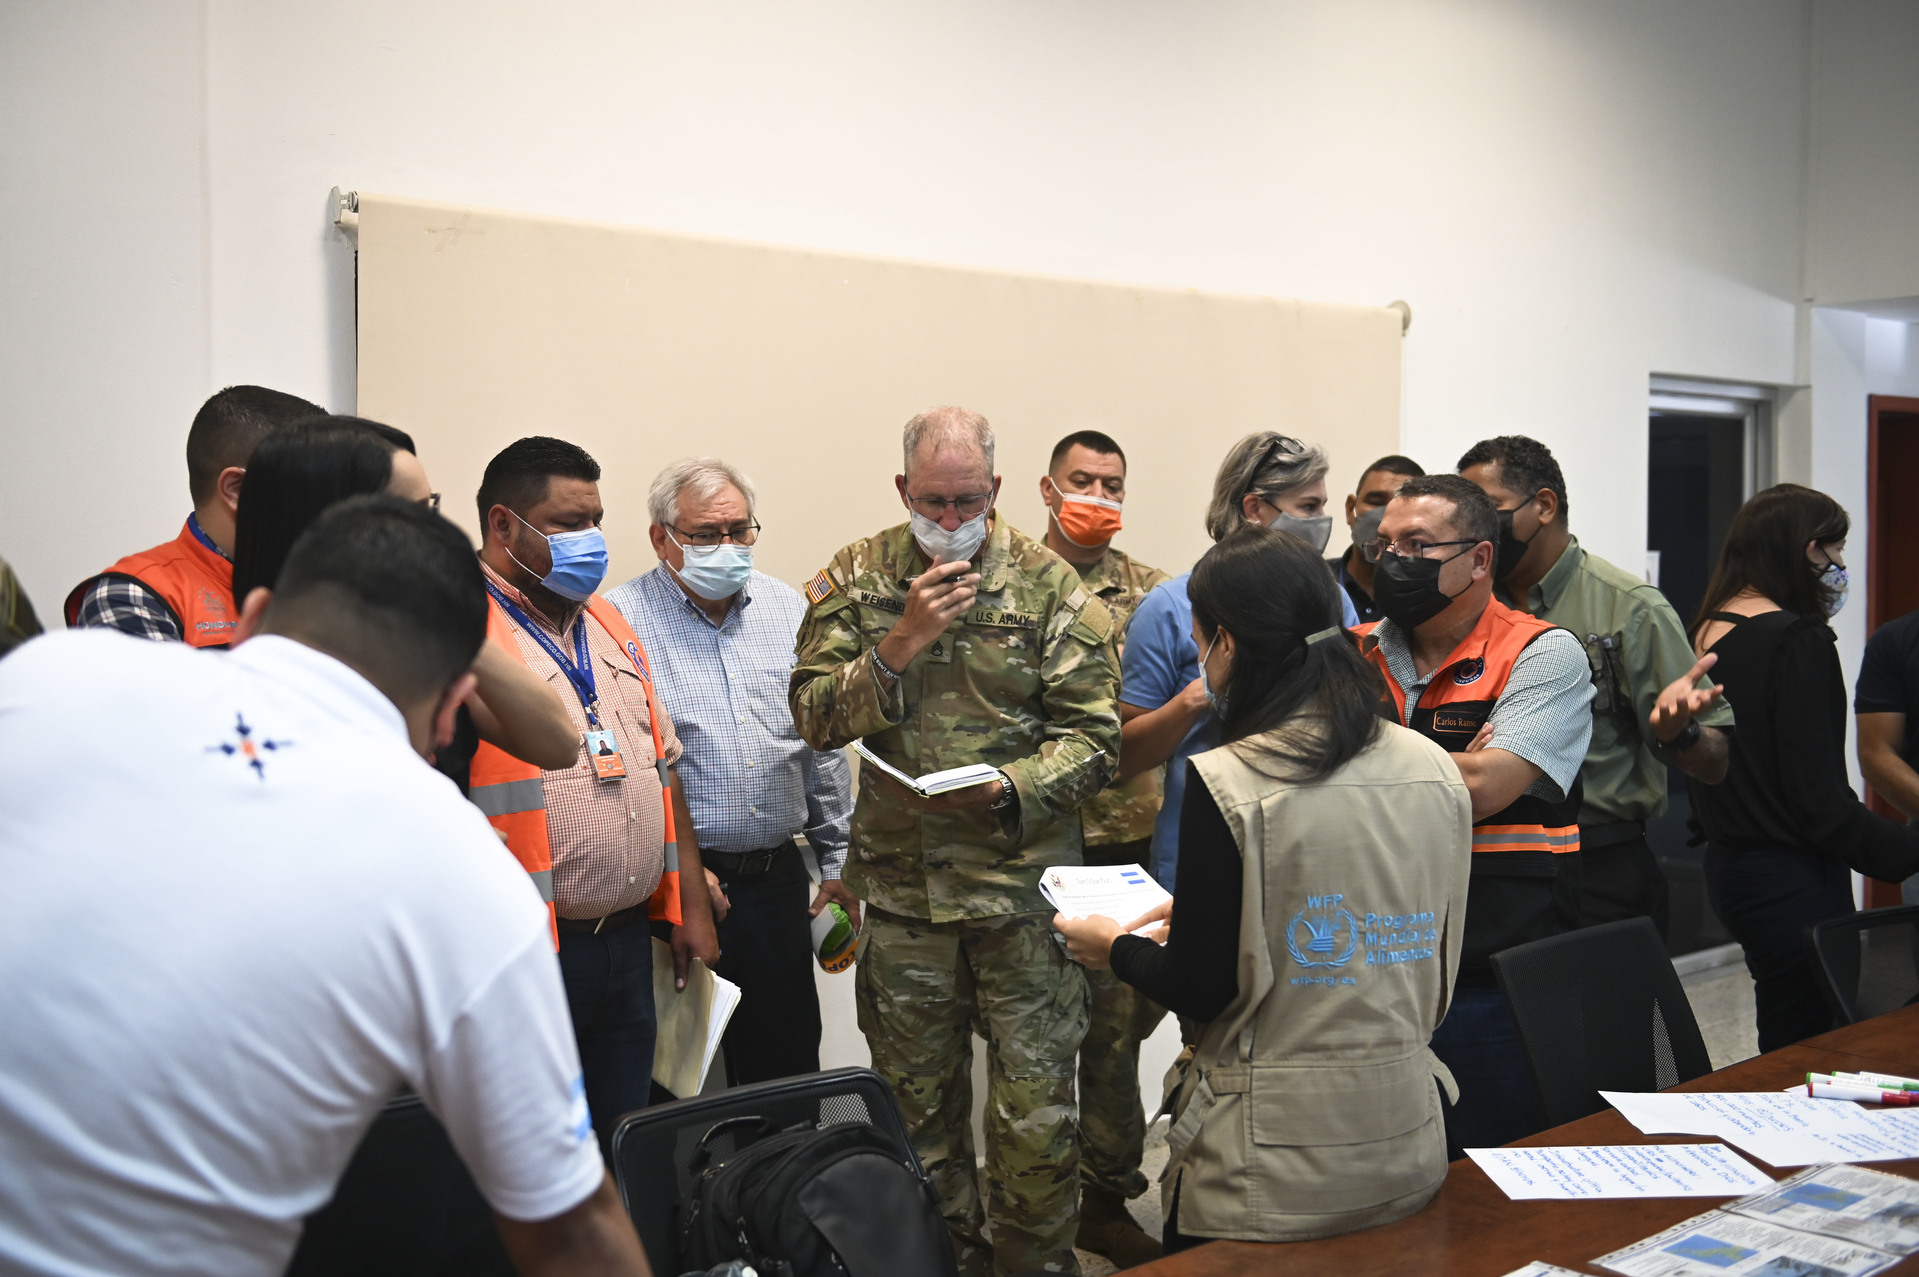 JTF-Bravo, Honduras, construindo confiança e preparando para desastres